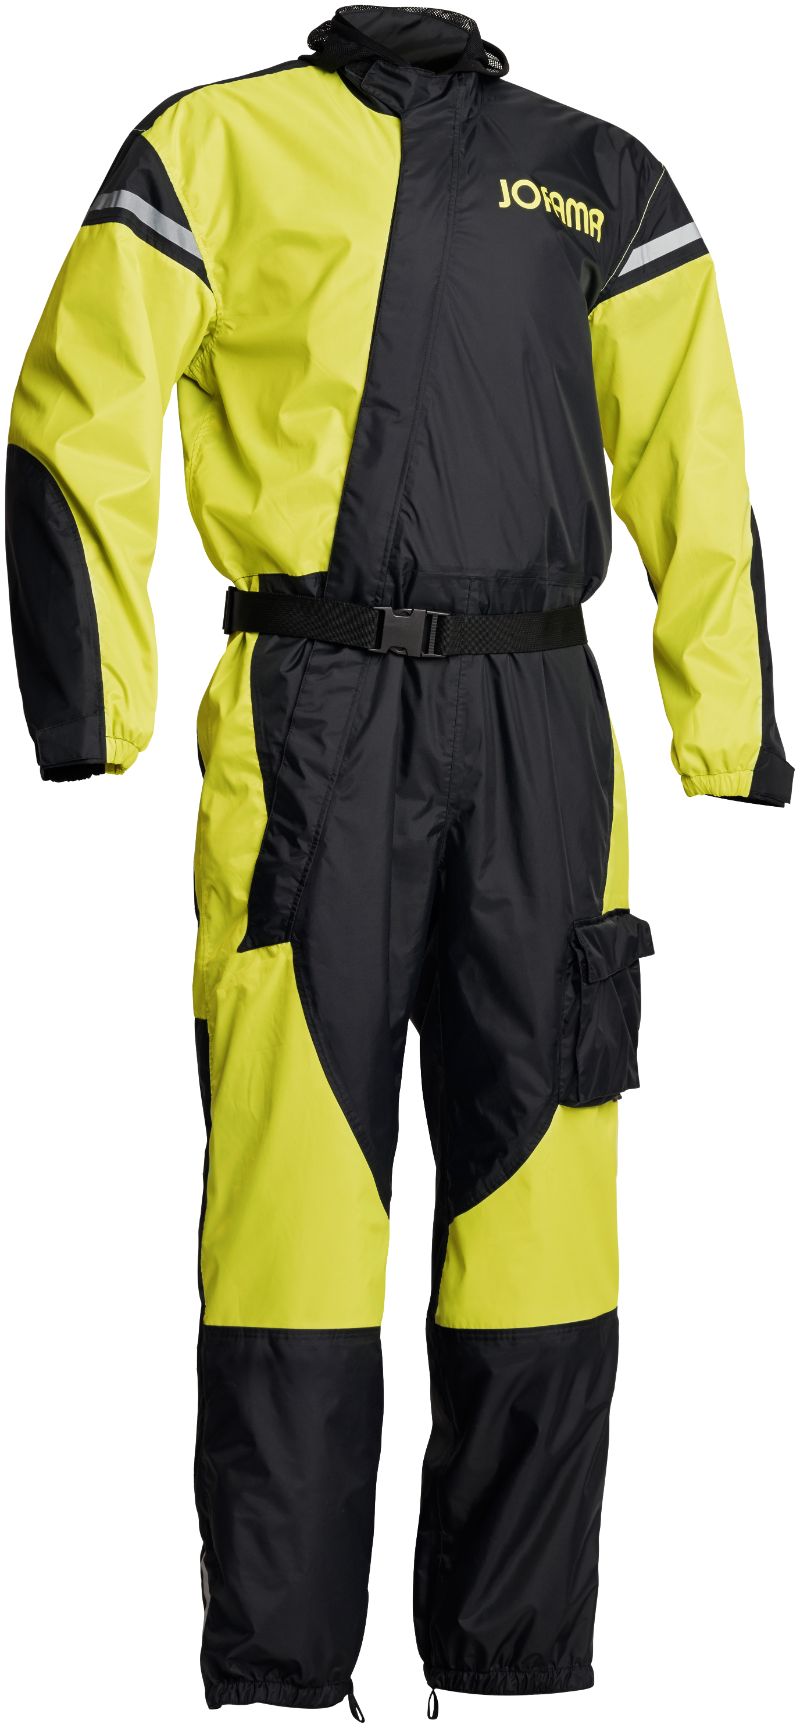 WP Suit (rain suit)